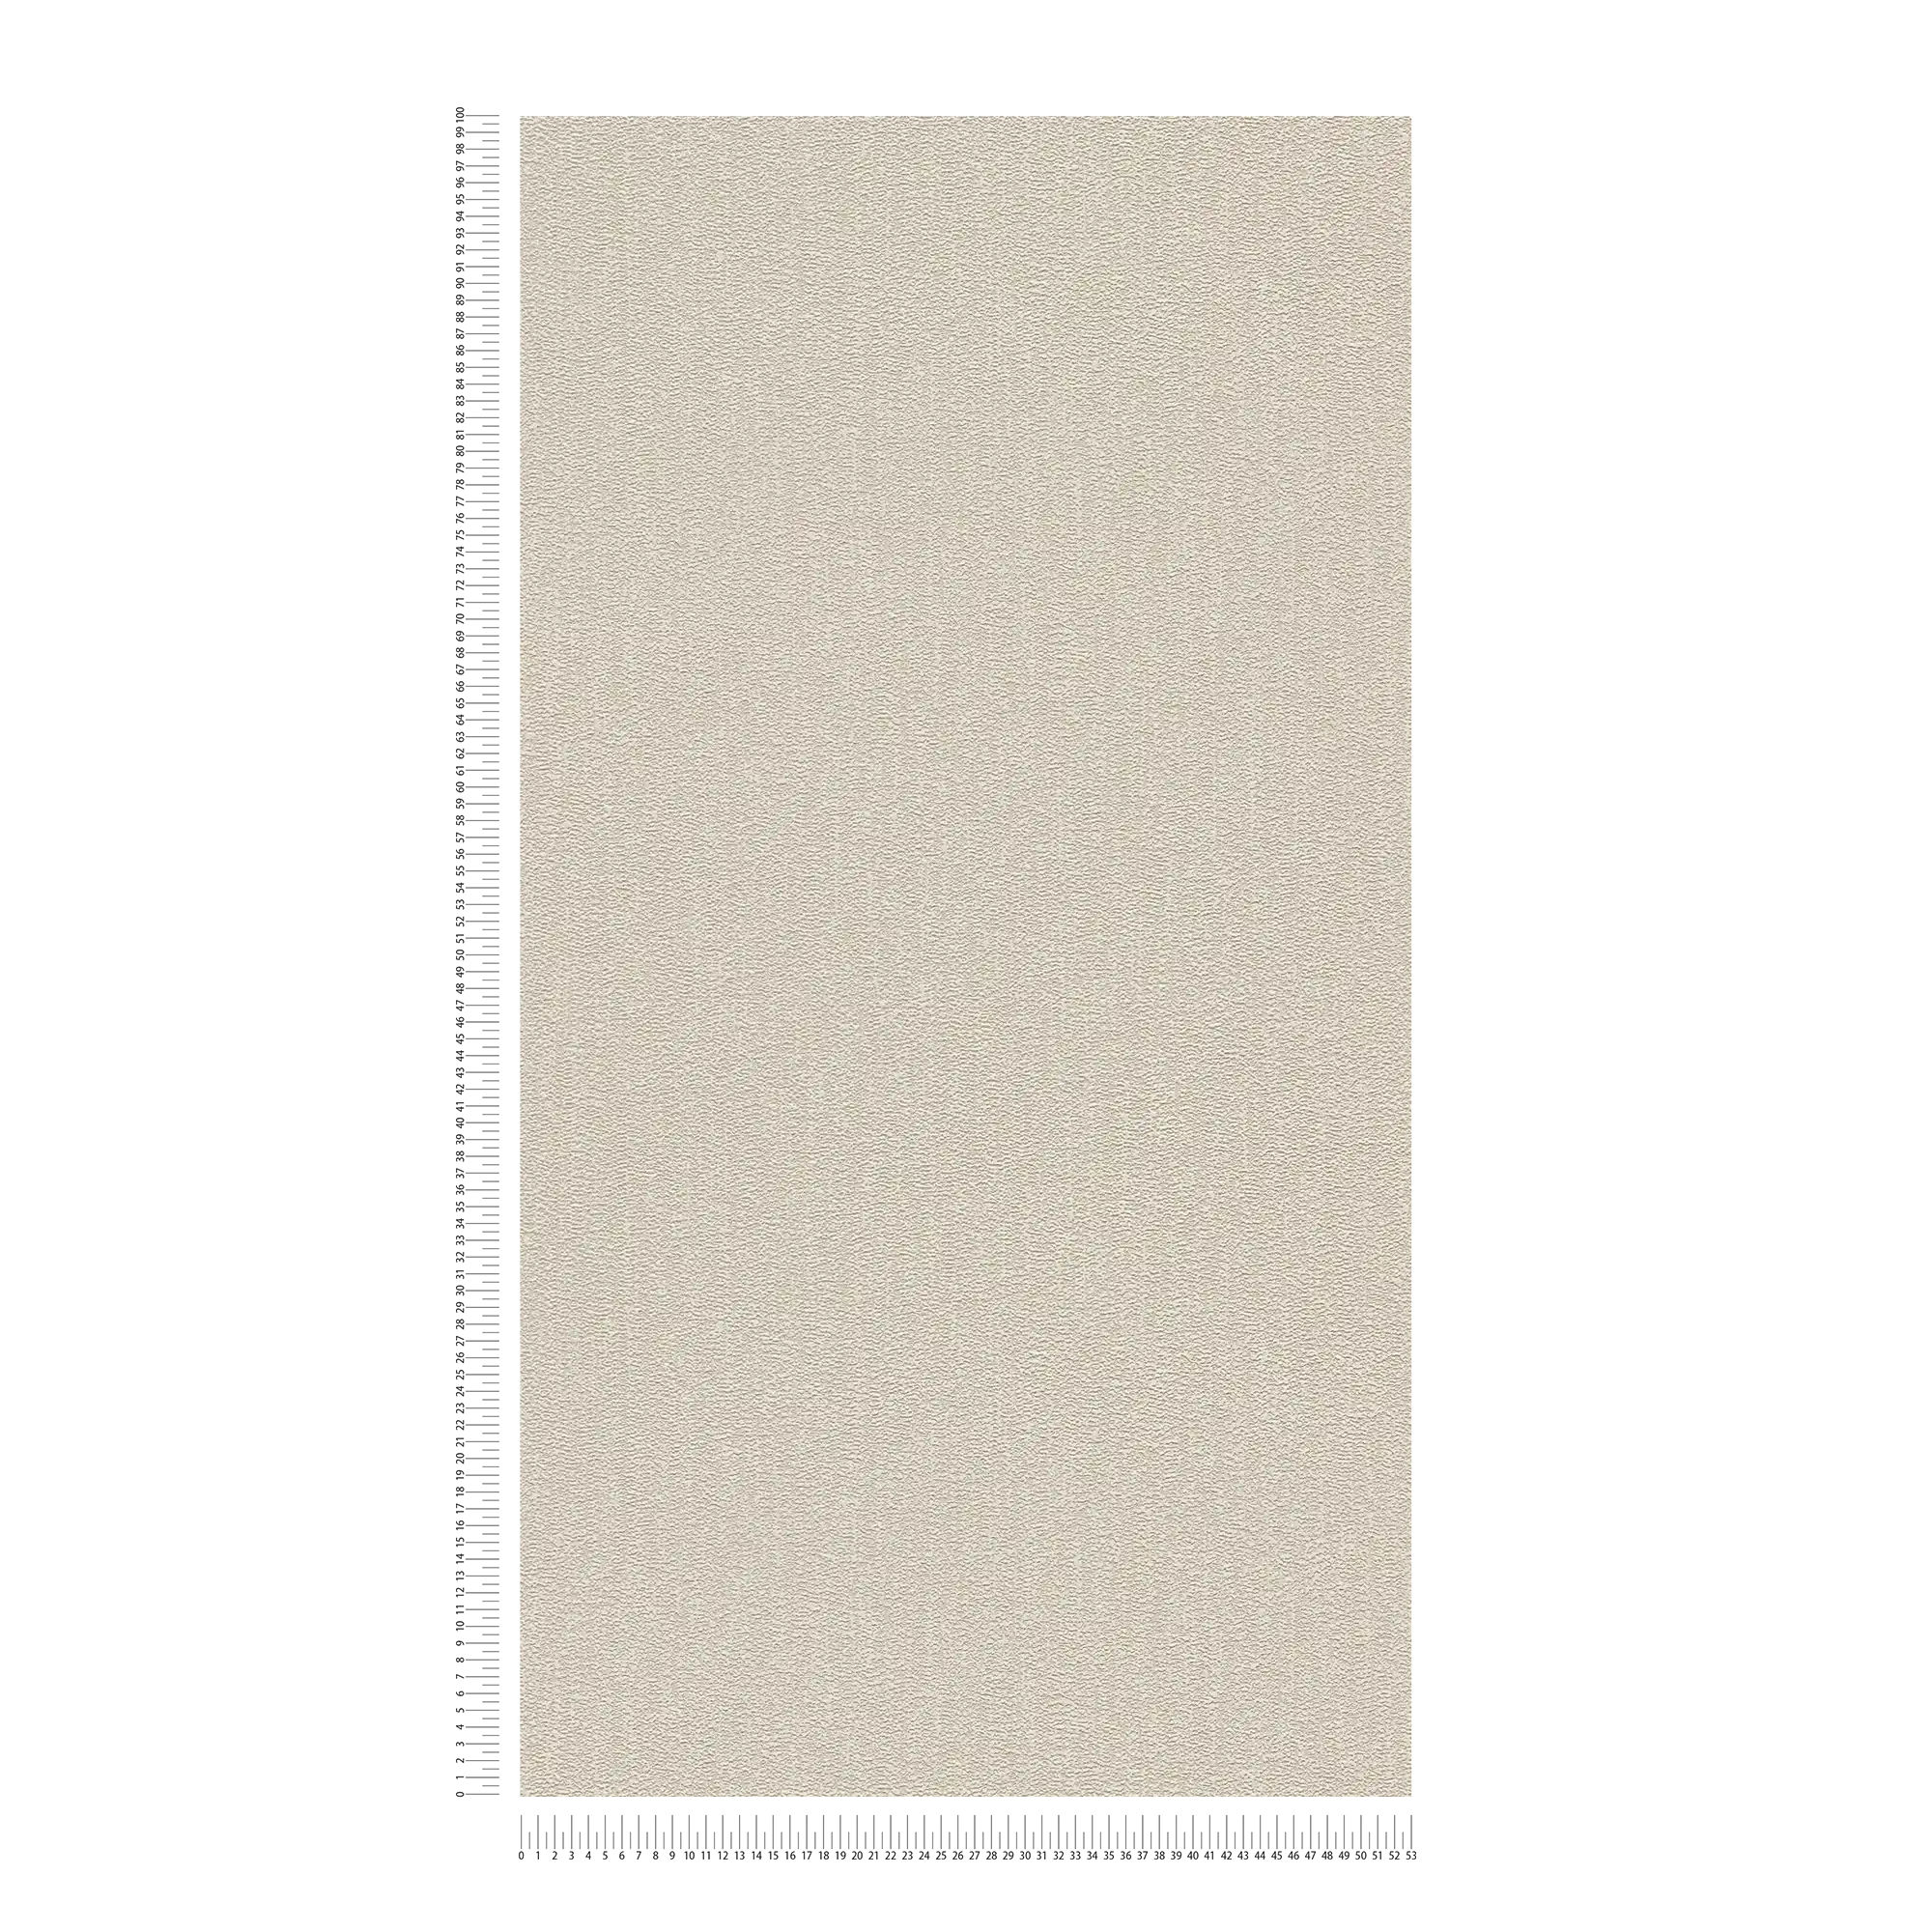             Papel pintado liso con estructura con un ligero brillo - beige, gris, plata
        